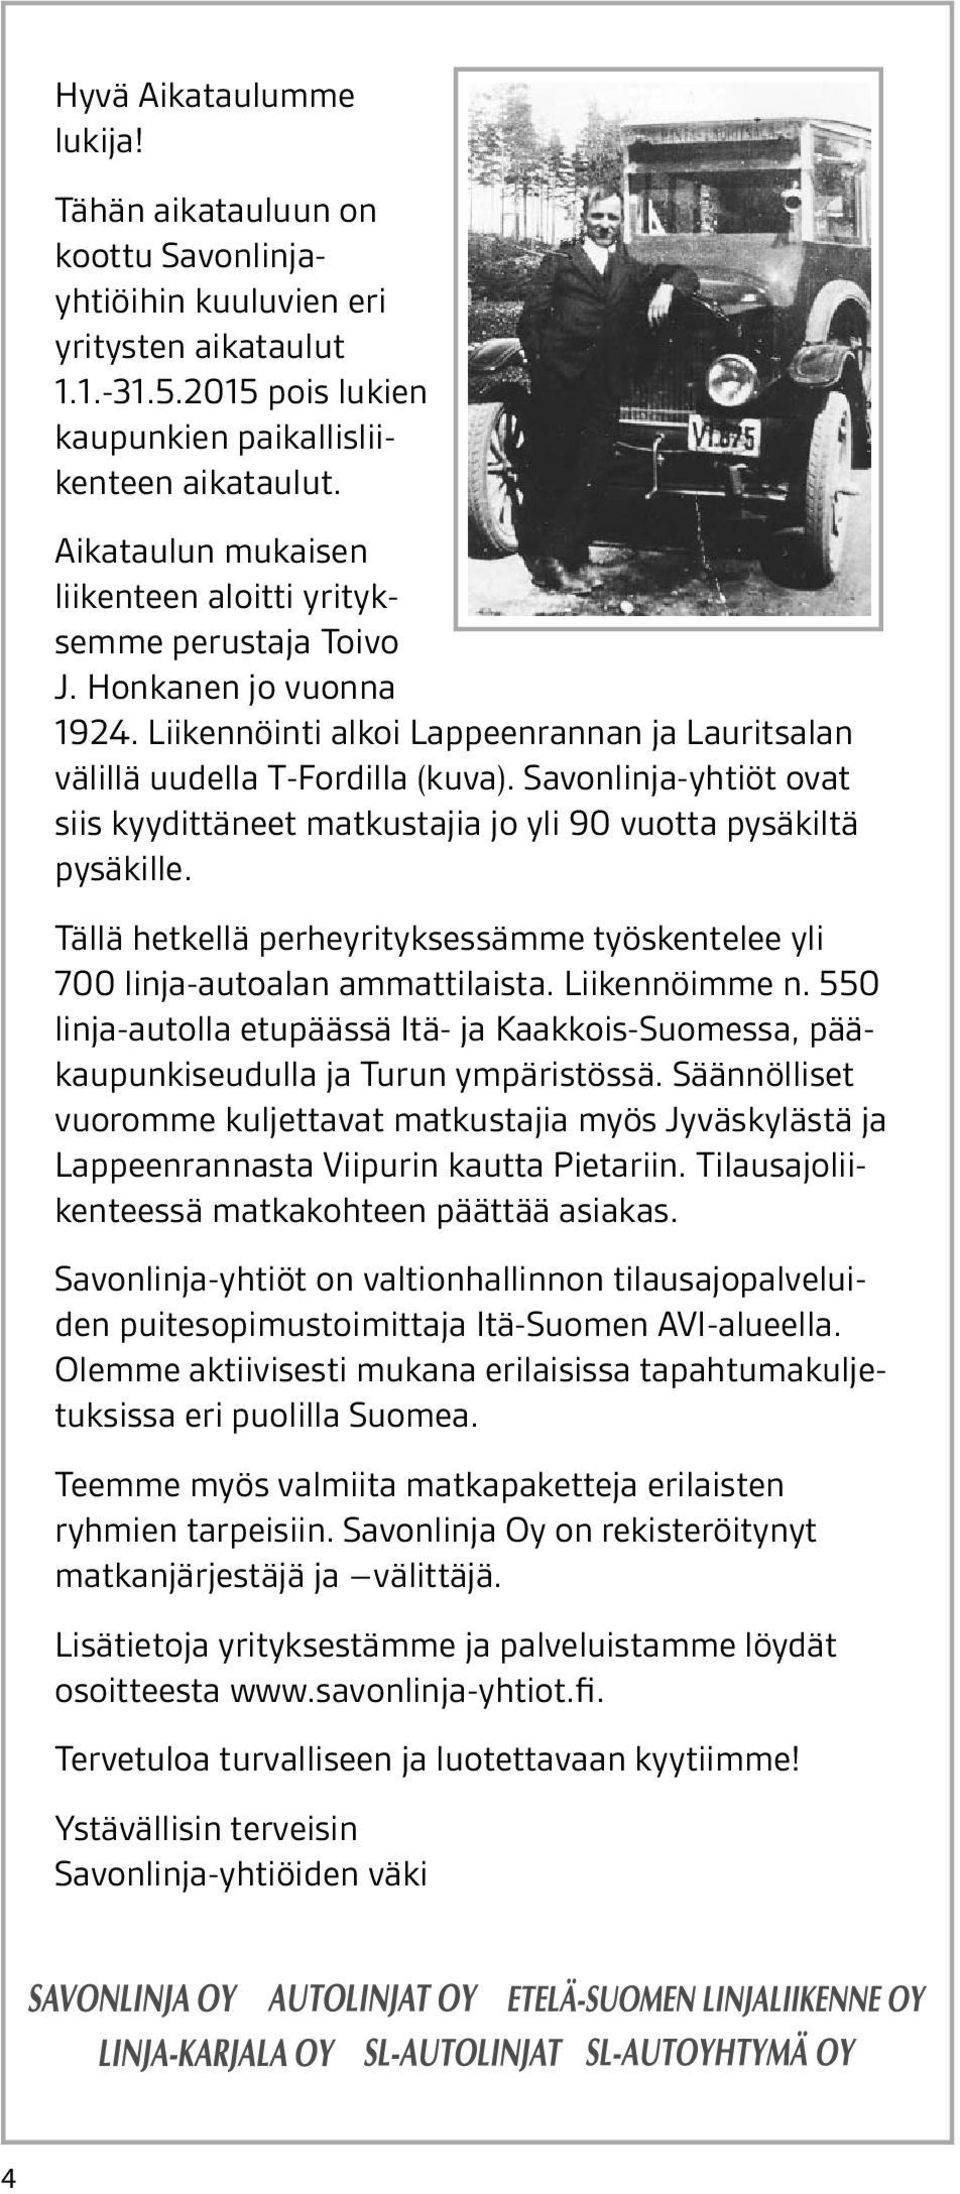 on Lisätietoja koottu Savonlinjayhtiöihin kuuluvien löydät osoit- eri yrityksestämme ja palveluistamme teesta yritysten www.savonlinja.fi aikataulut. 1.1.-31.5.